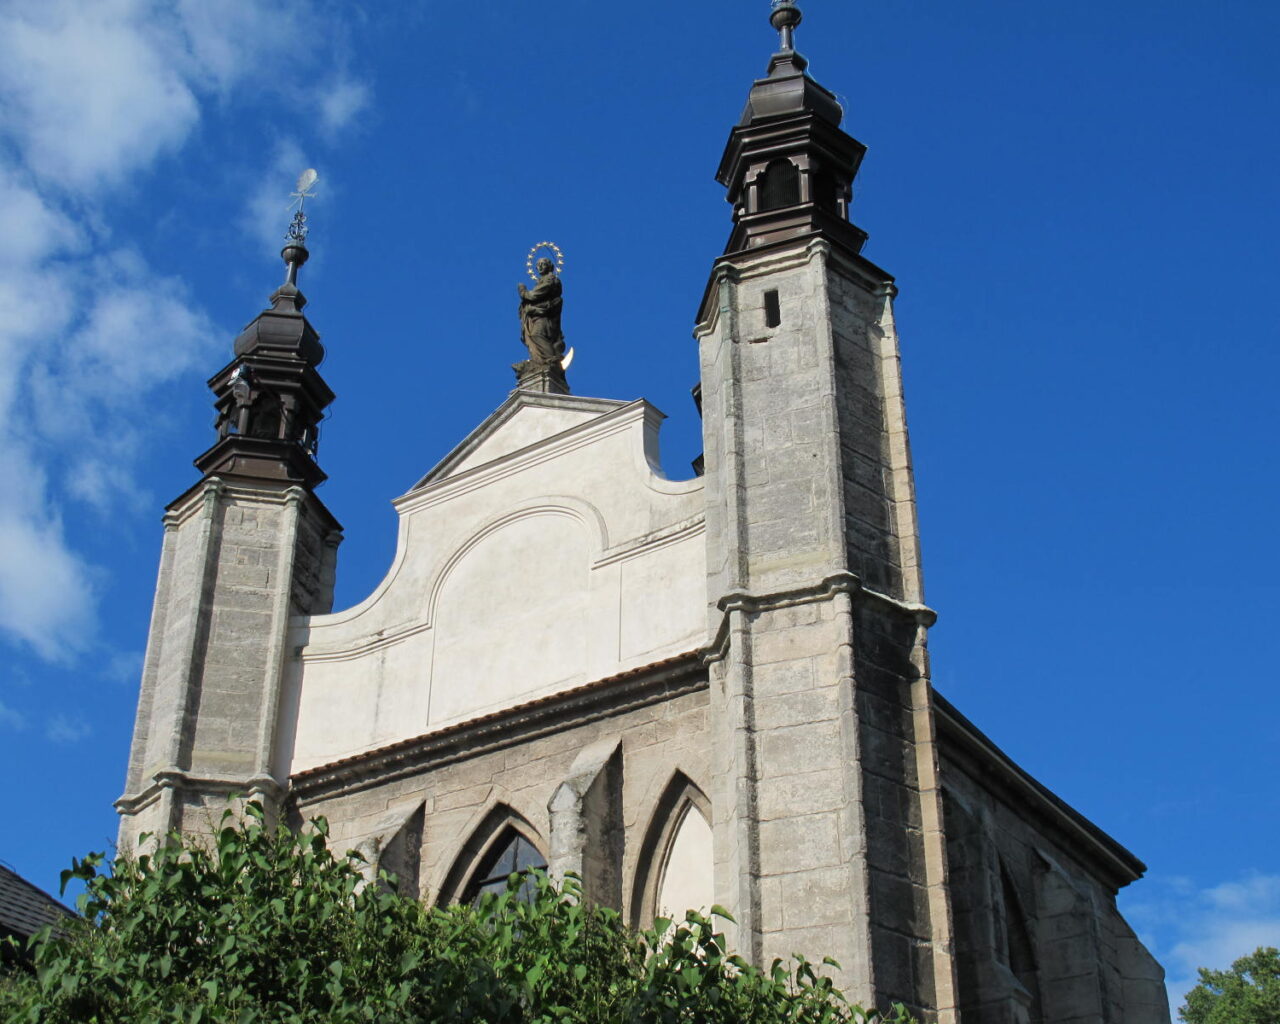 30 Chapelle funéraire de Tois les Saints de Sedlec